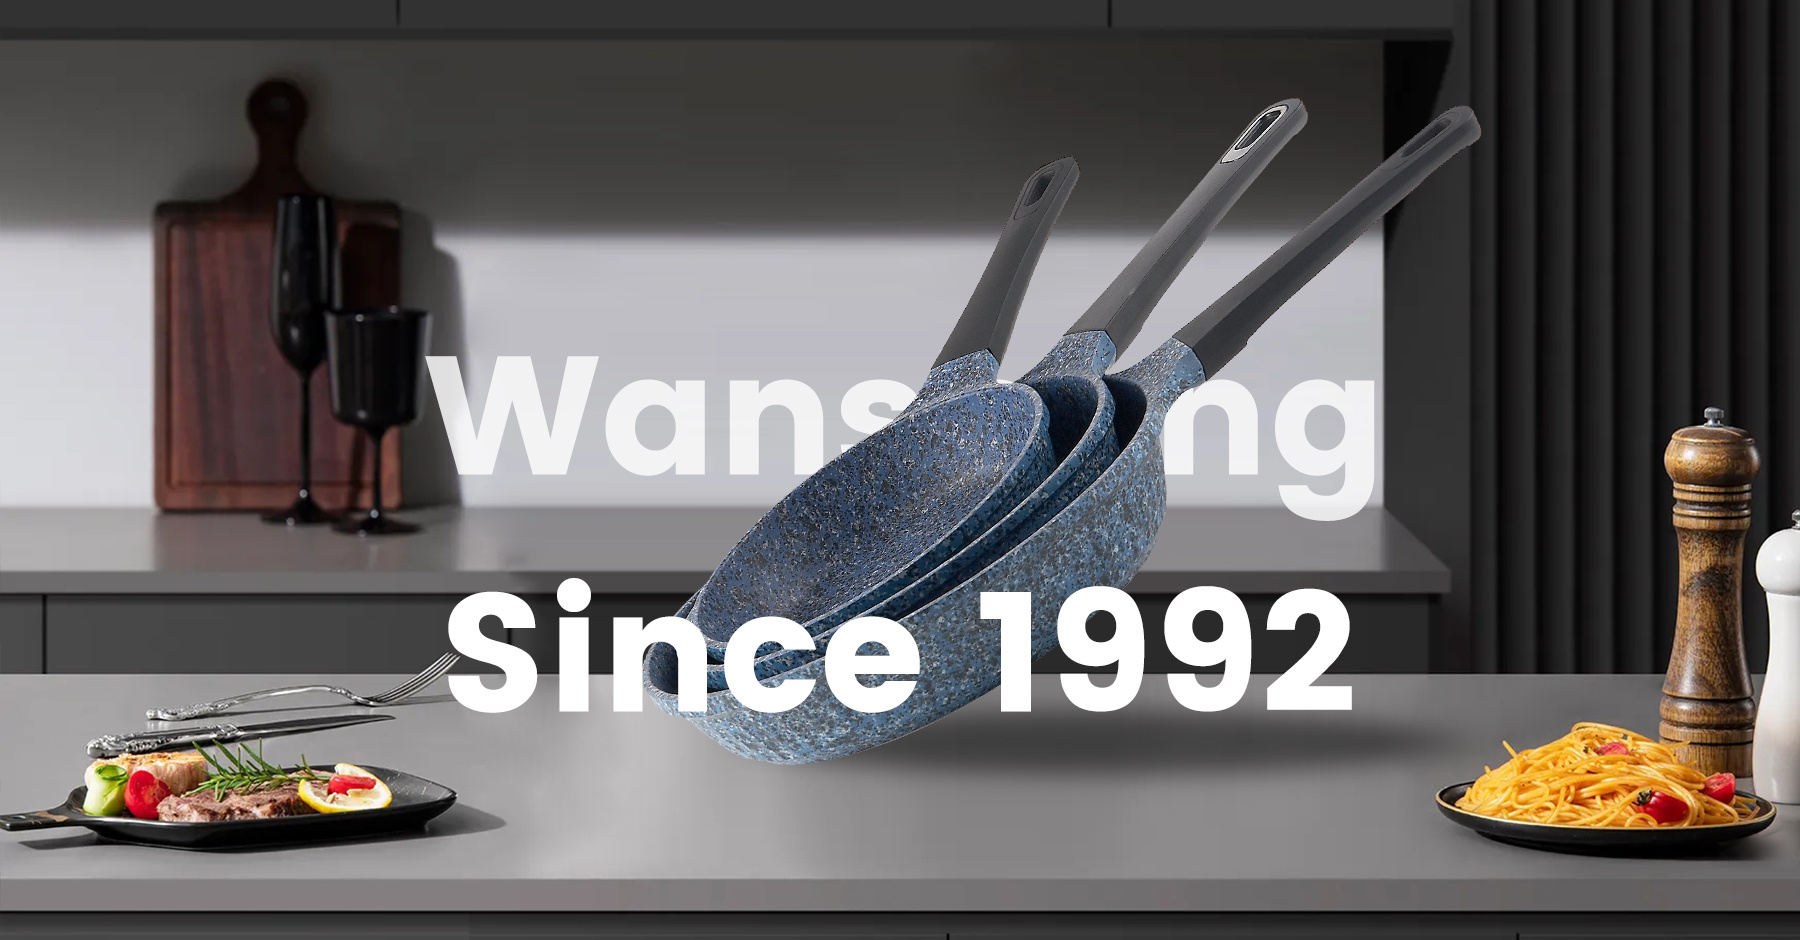 wansheng